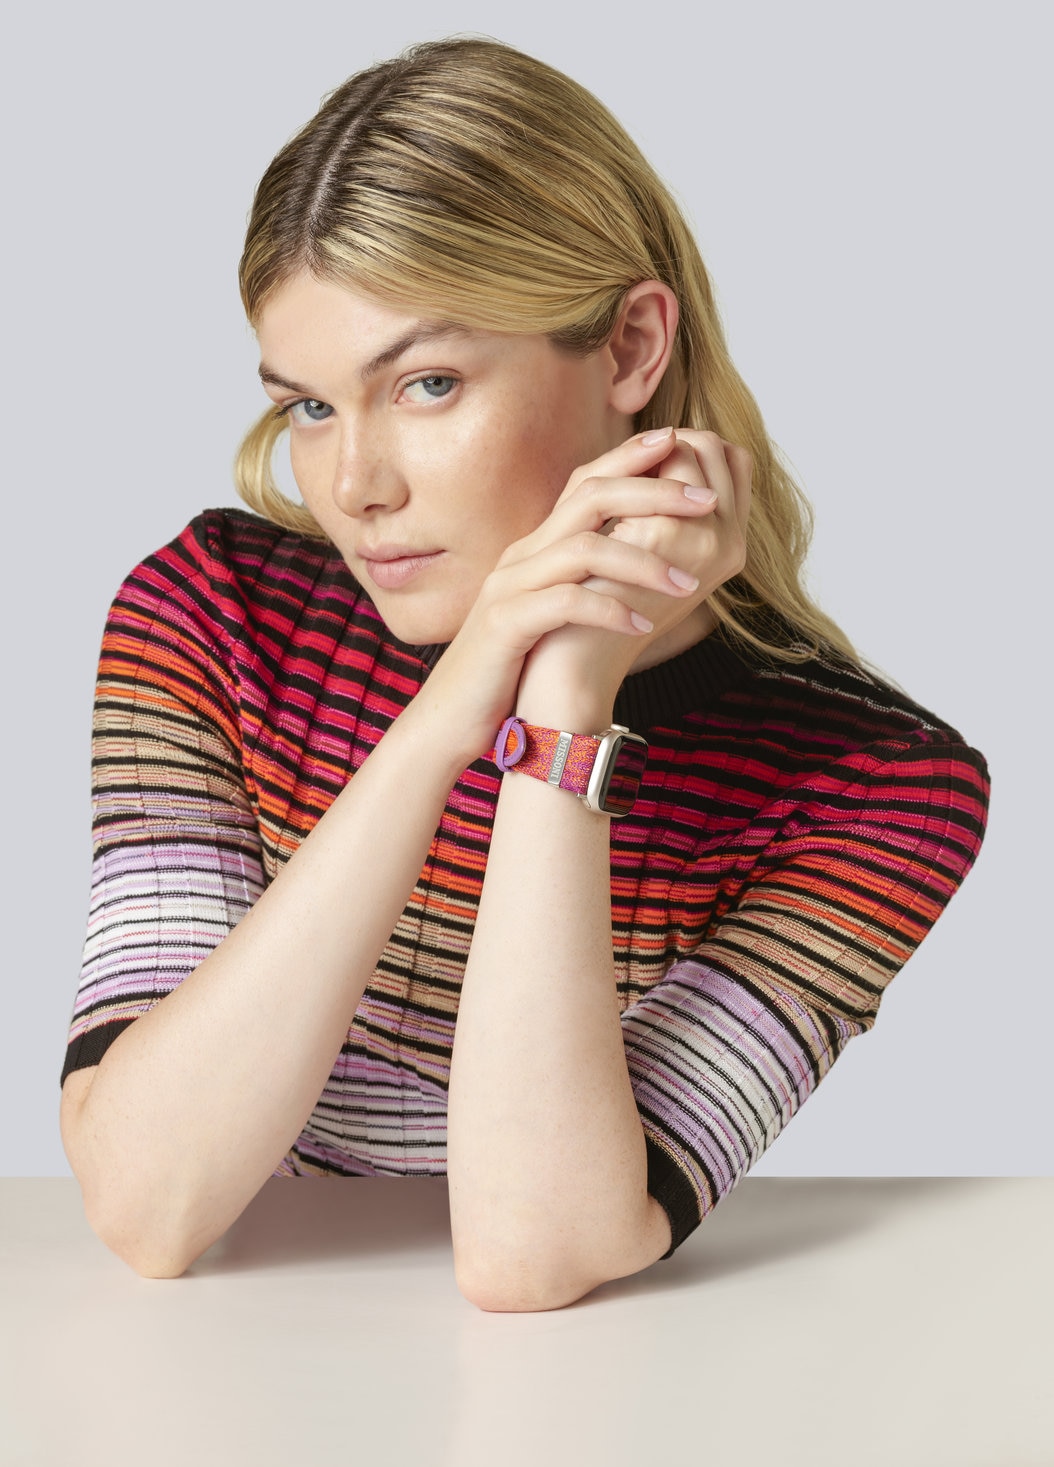 Missoni Fabric 22 mm mit Apple Watch kompatibles Armband, Mehrfarbig  - 8053147046235 - 1